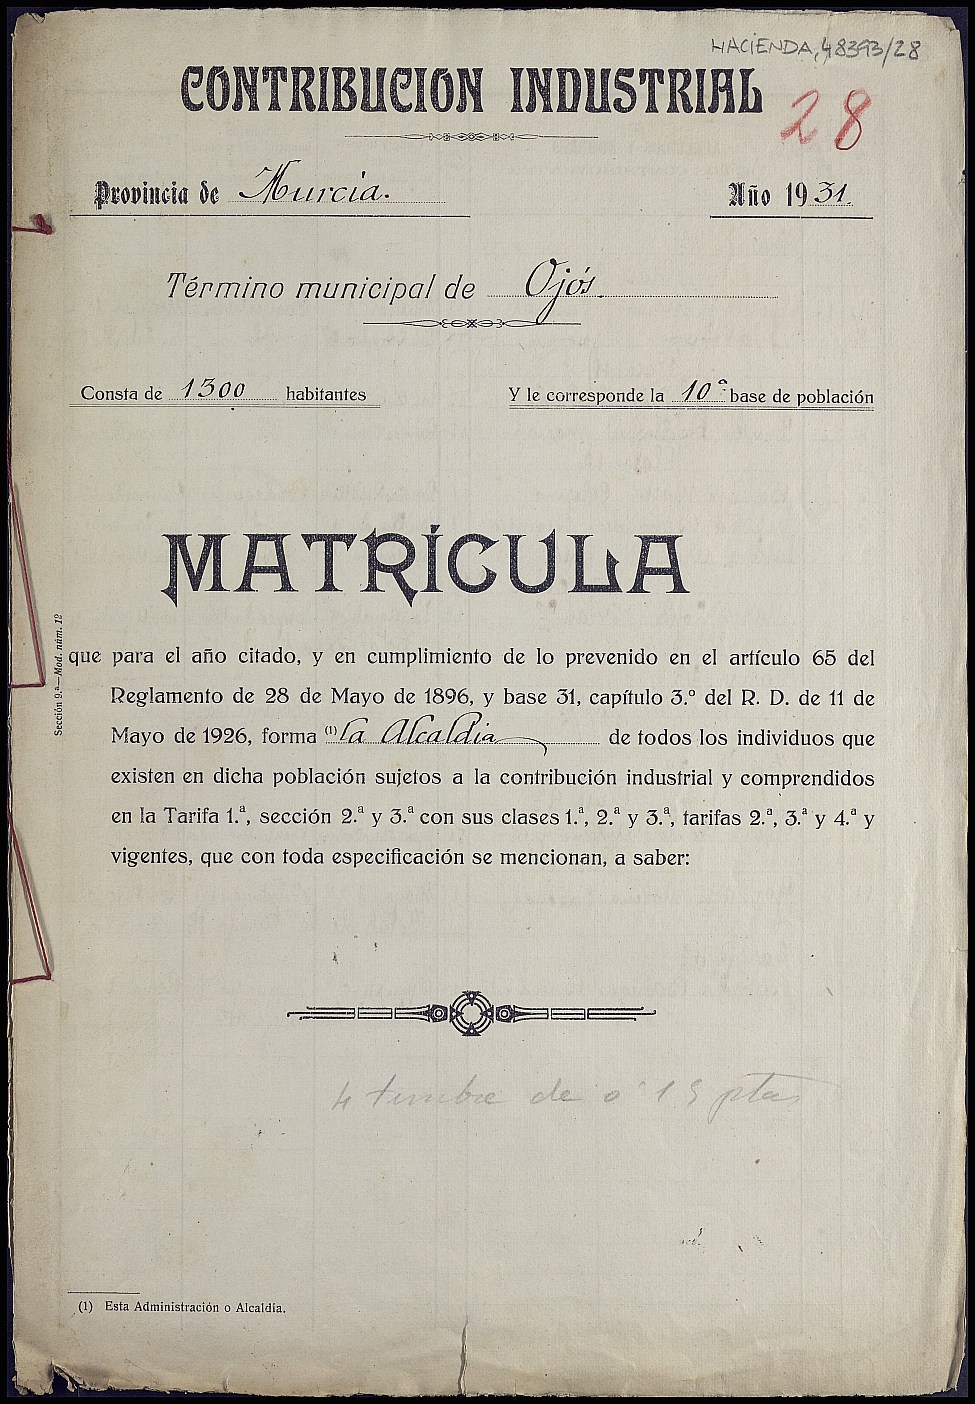 Matrícula de la contribución industrial de Ojós. Año 1931.